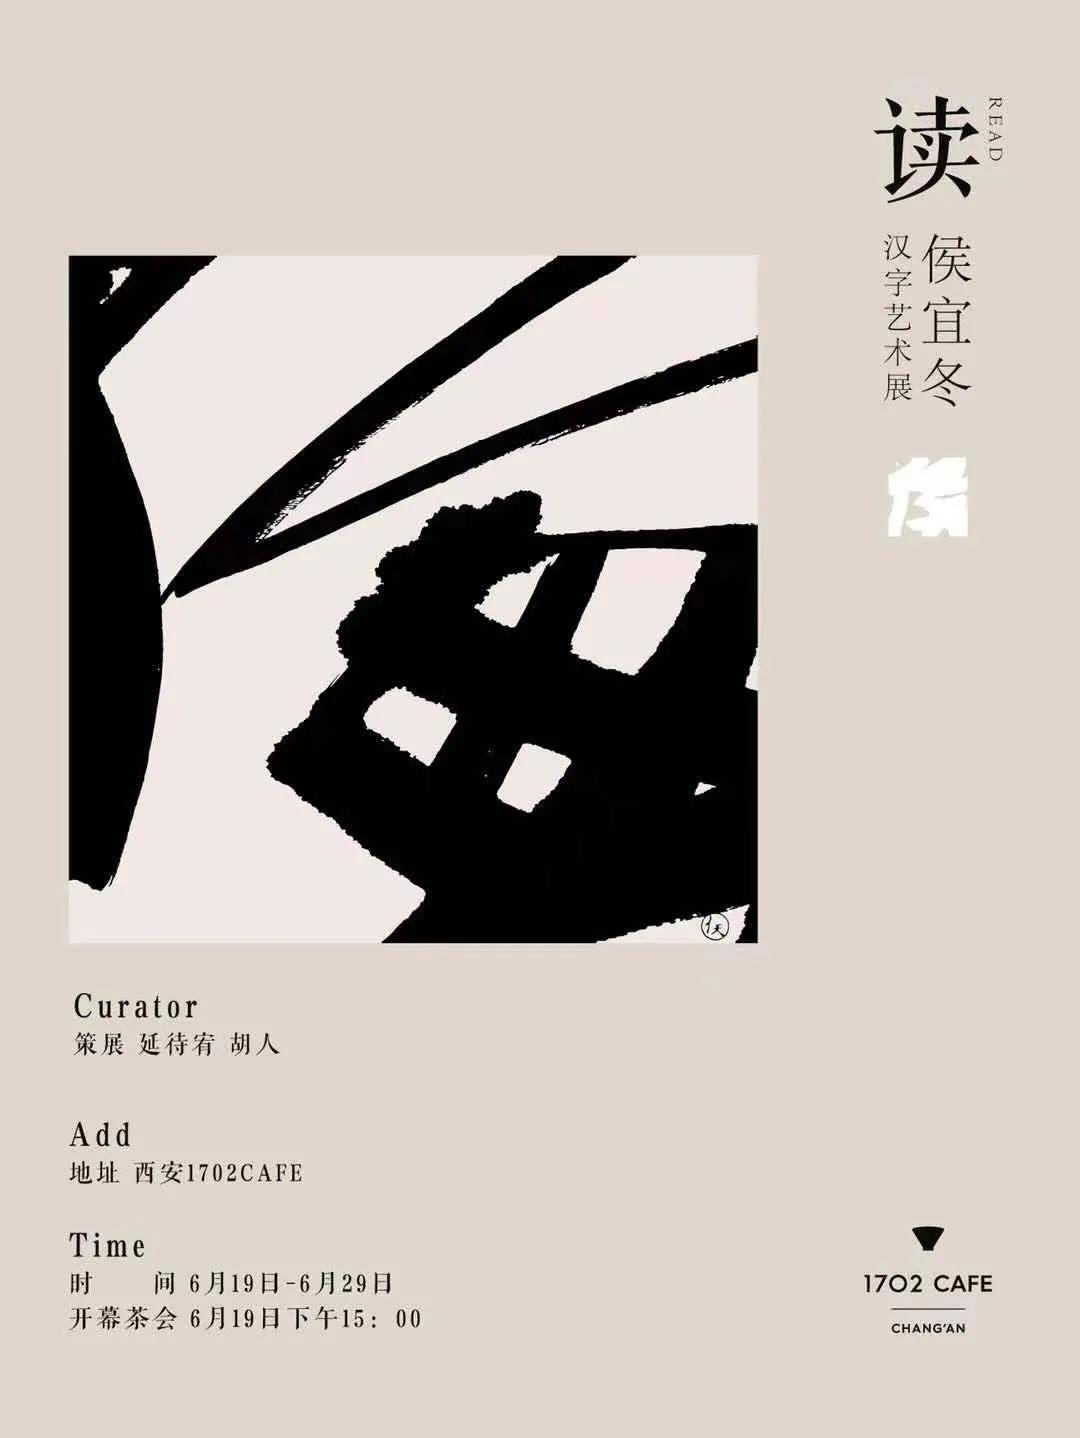 侯宜冬汉字艺术展在西安1702cafe开展,展出侯宜冬近期创作的汉字作品